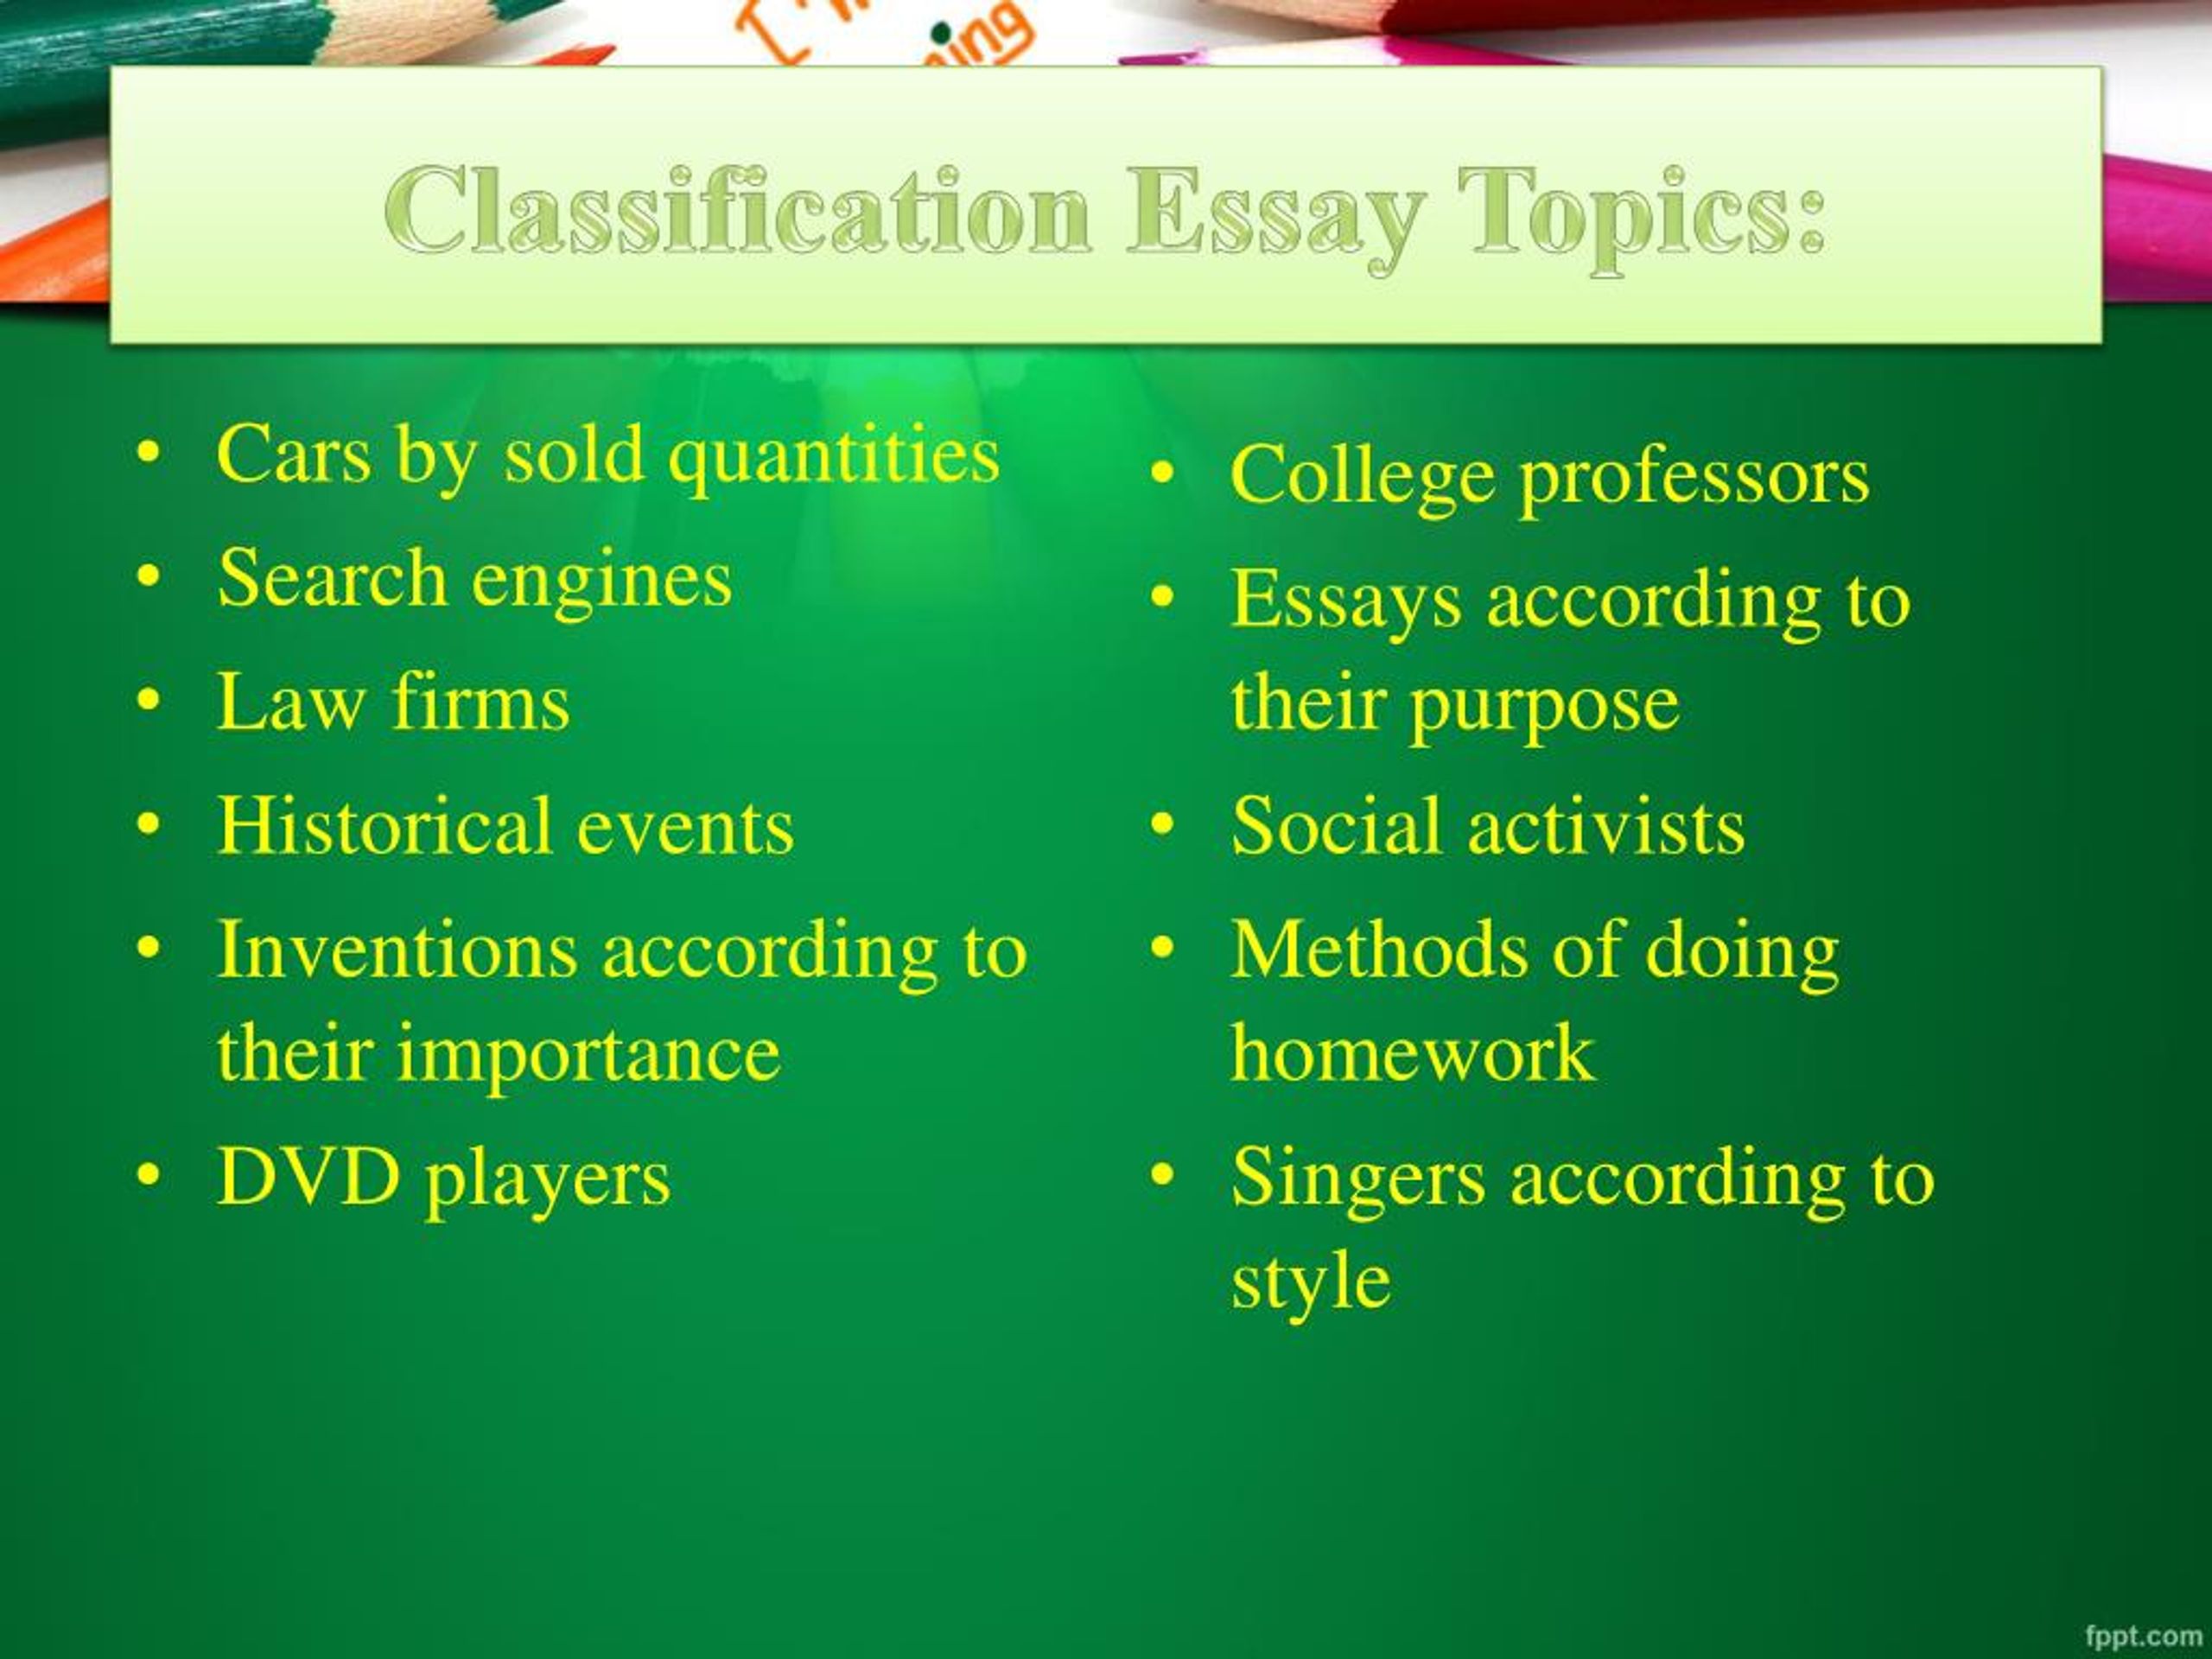 topics of classification essay